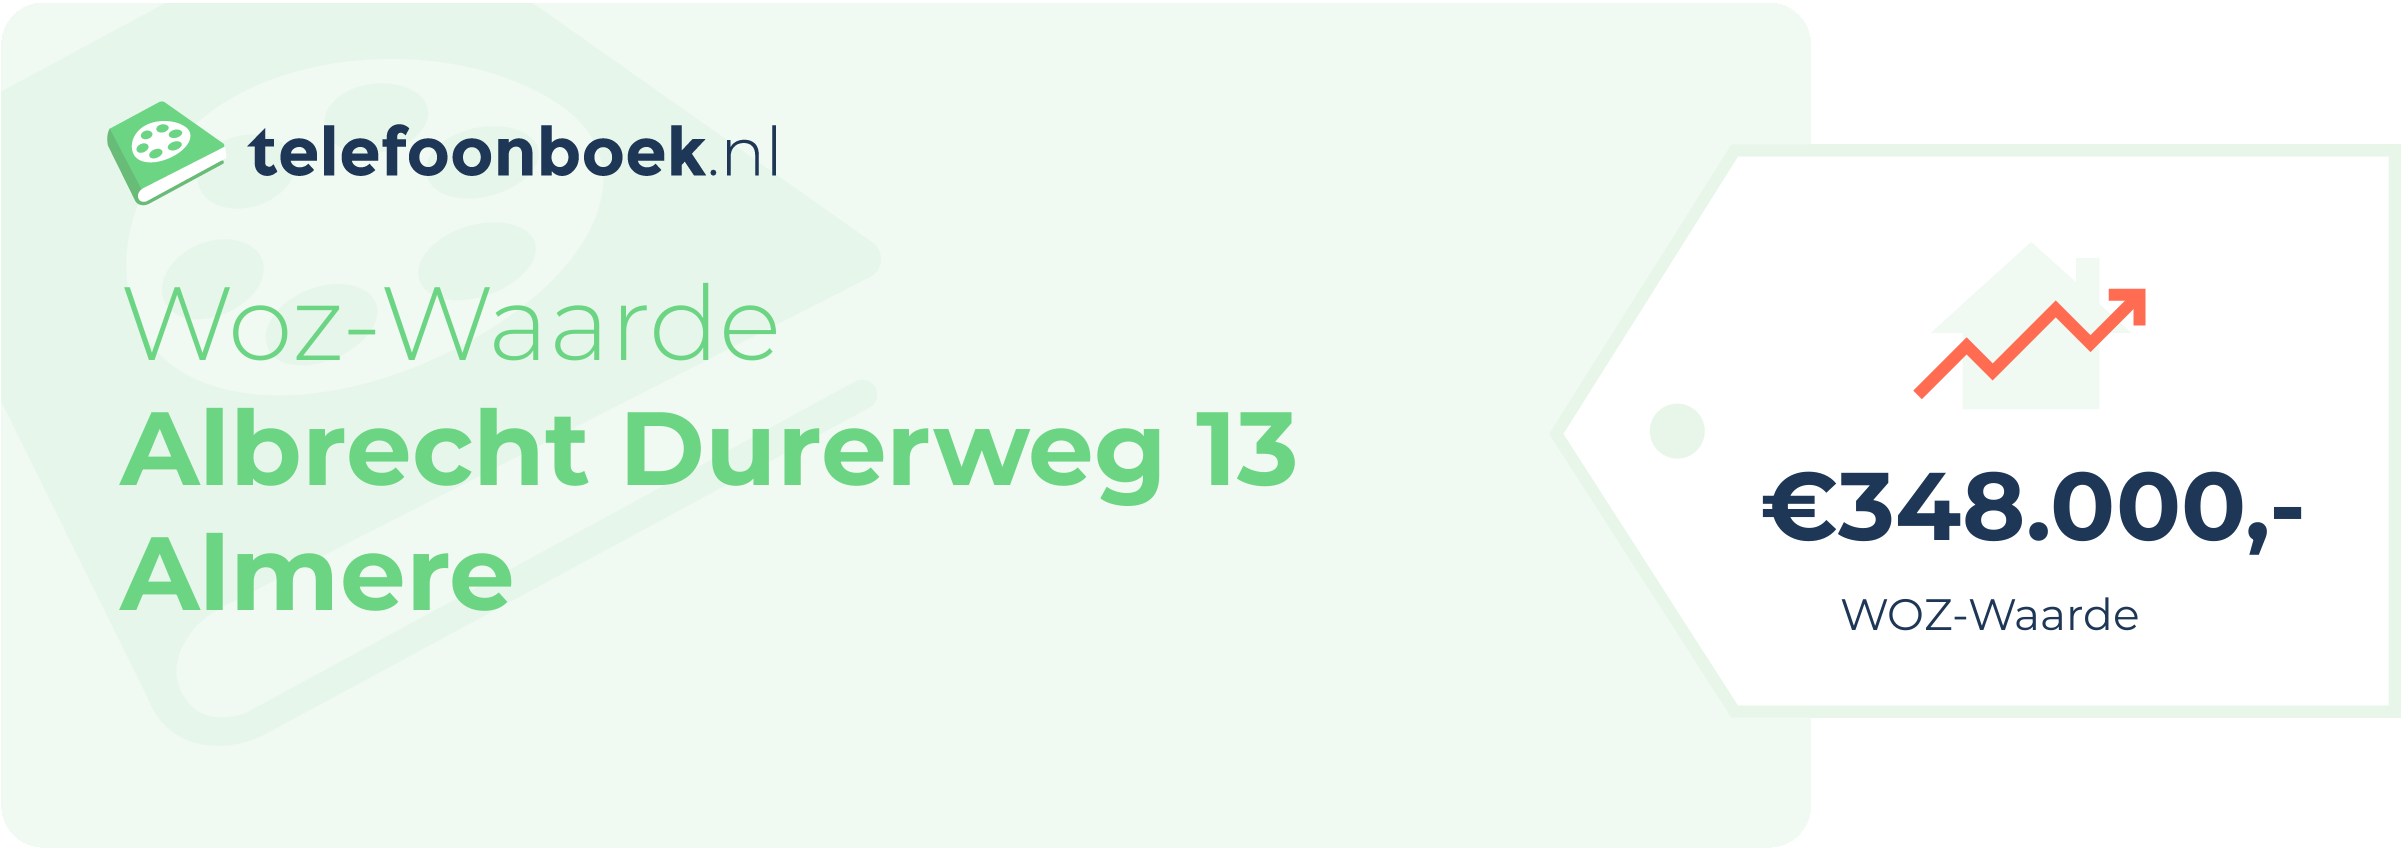 WOZ-waarde Albrecht Durerweg 13 Almere